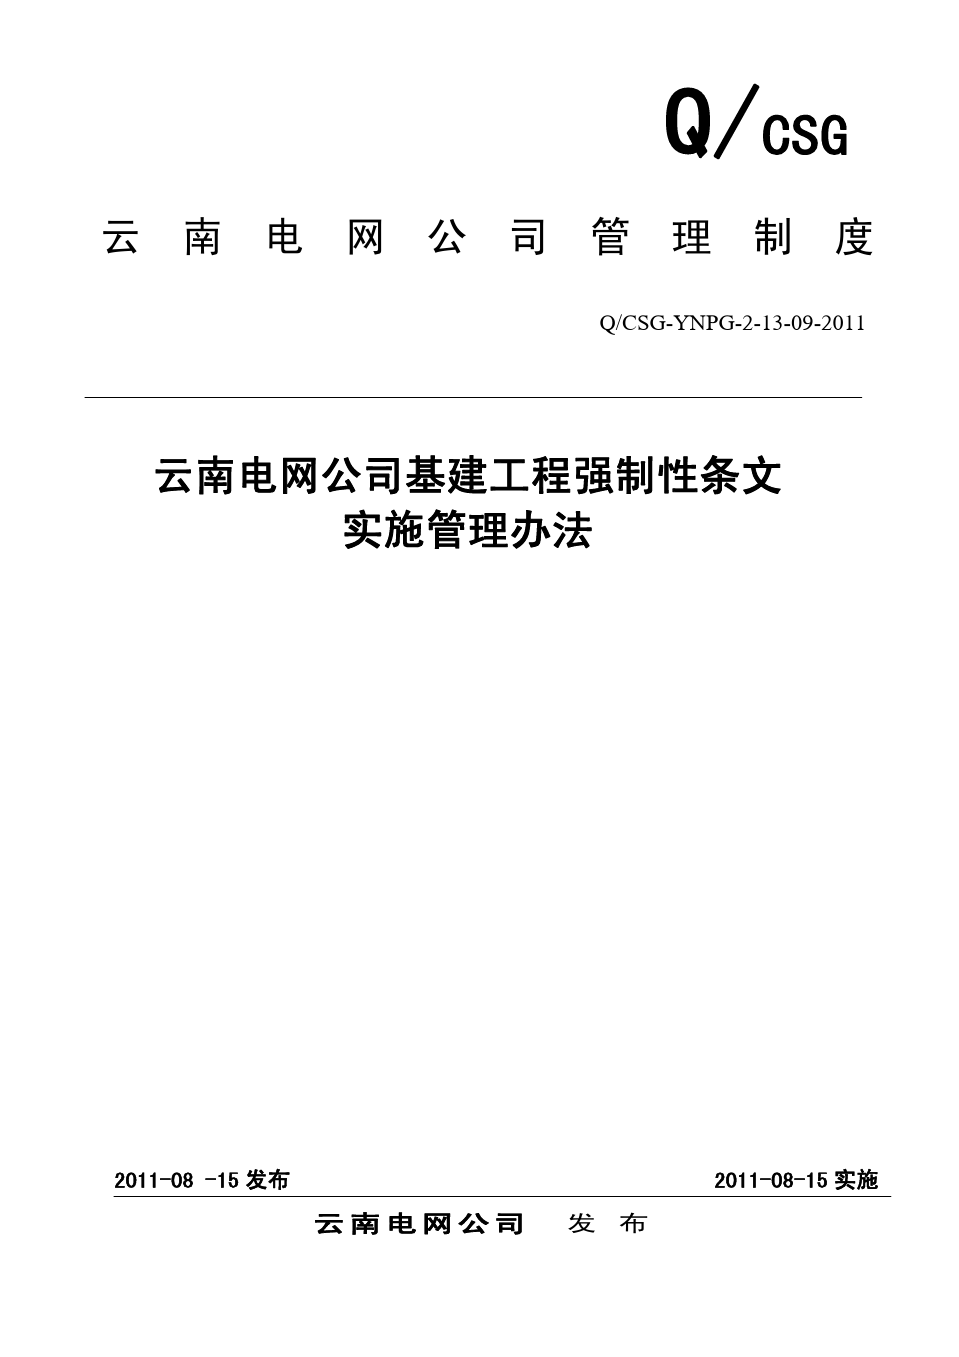 [附件]09 云南电网公司基建工程强制性条文实施管理办法